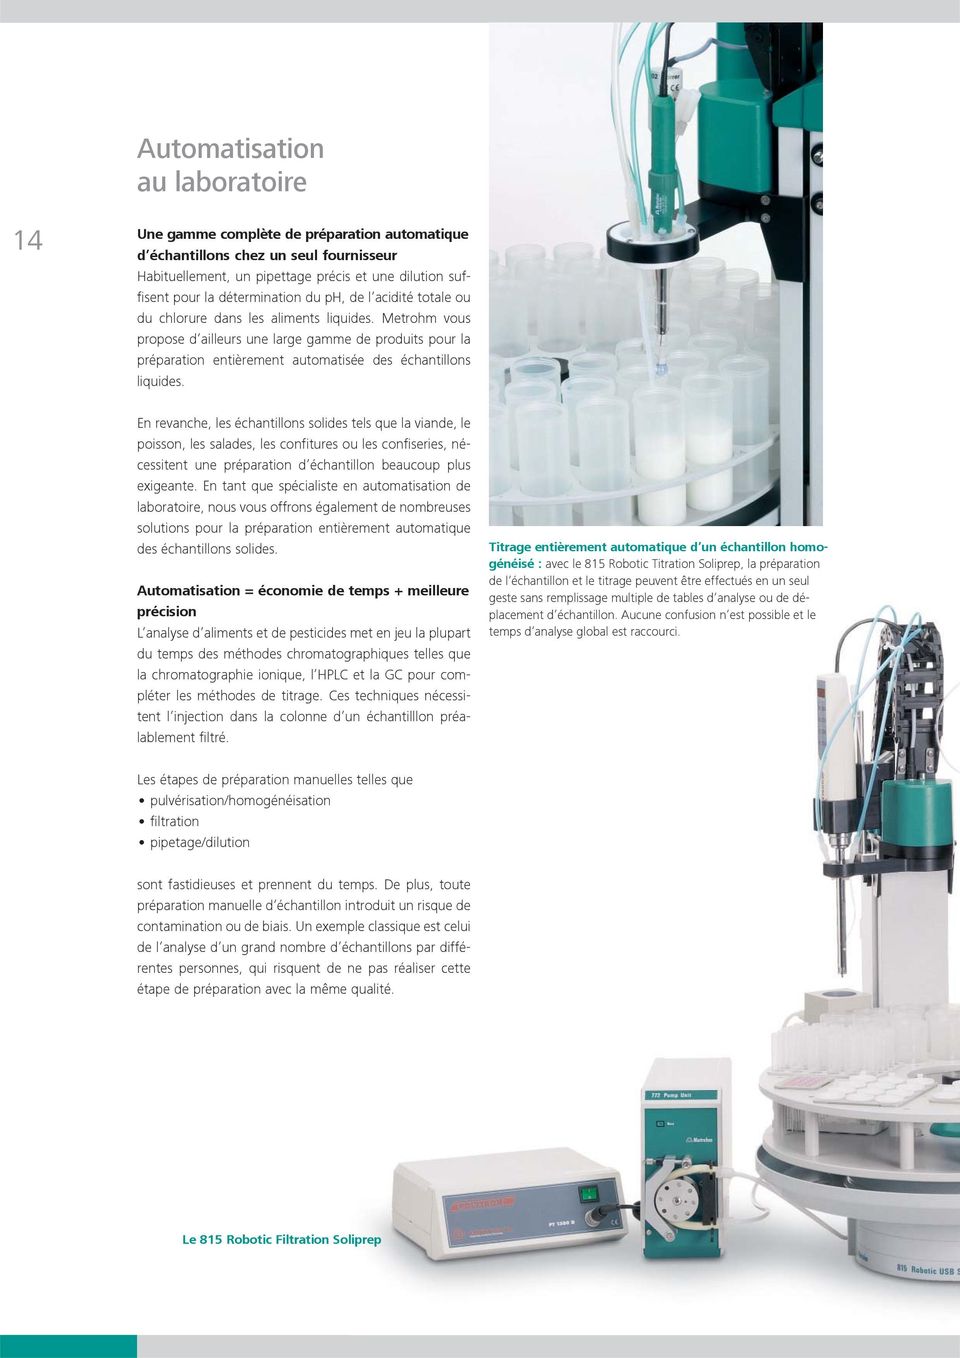 Metrohm vous pro pose d ailleurs une large gamme de produits pour la préparation entièrement automatisée des échantillons liquides.